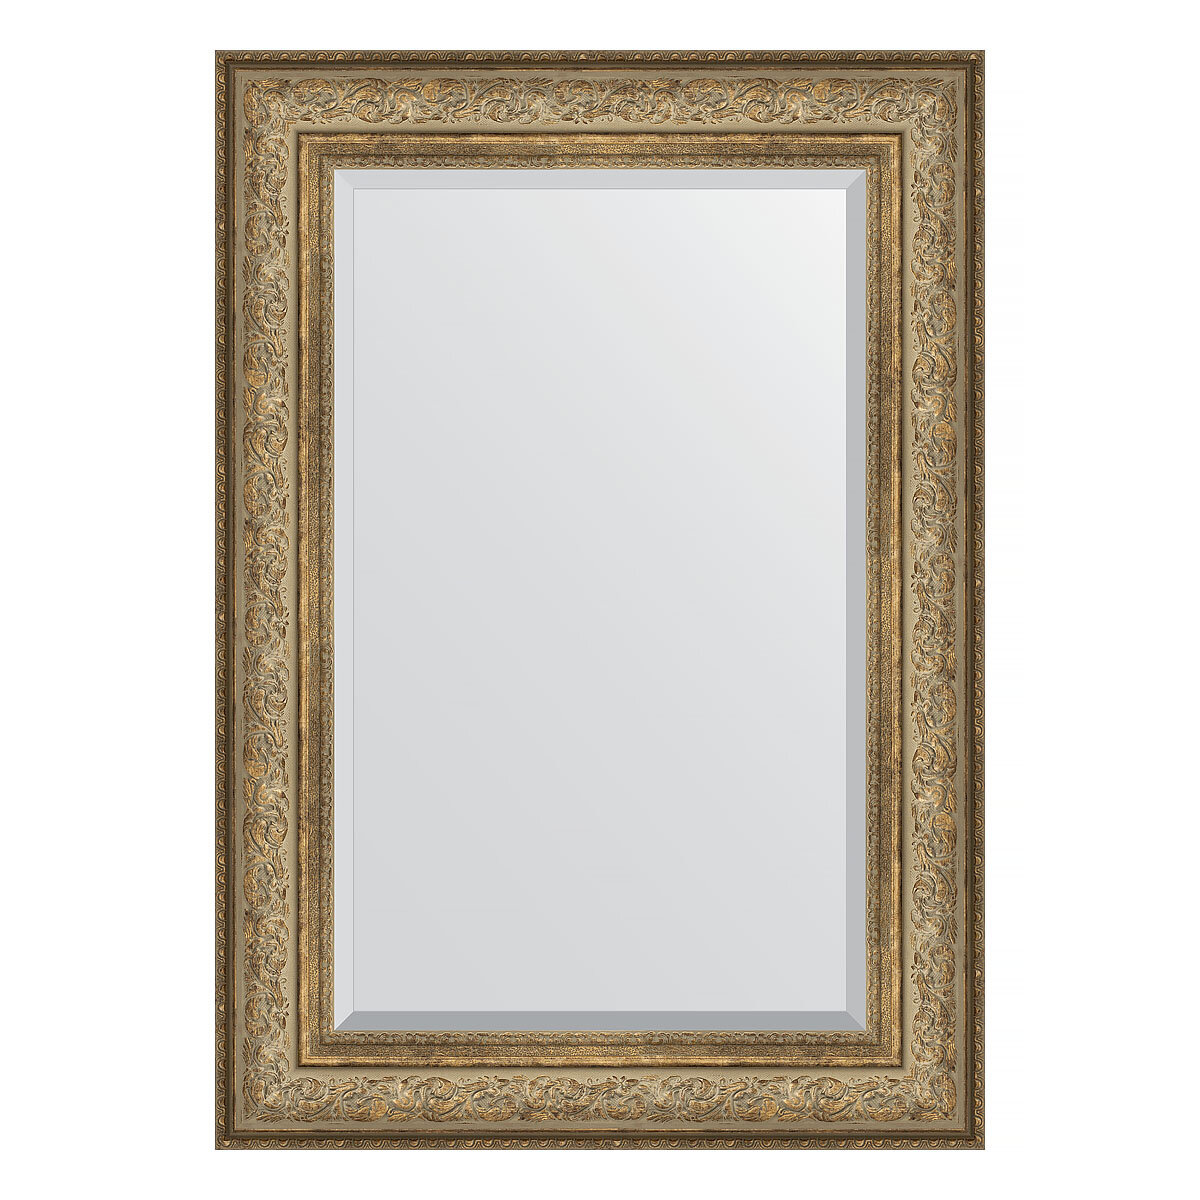 Зеркало настенное с фацетом EVOFORM в багетной раме виньетка античная бронза, 70х100 см, для гостиной, прихожей, спальни и ванной комнаты, BY 3451